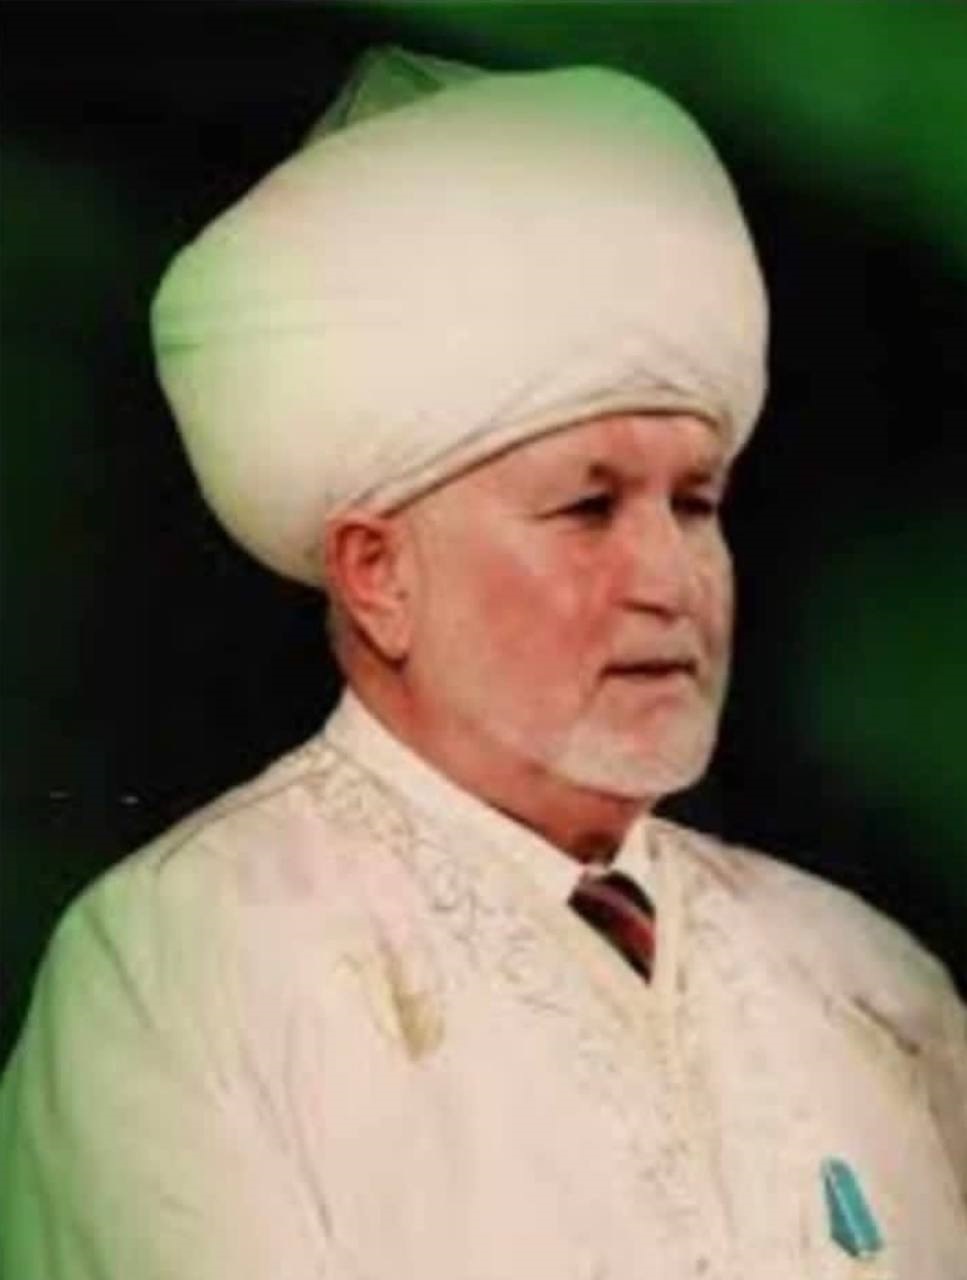 В Астрахани ушёл из жизни бывший муфтий региона Назымбек-хазрат Ильязов